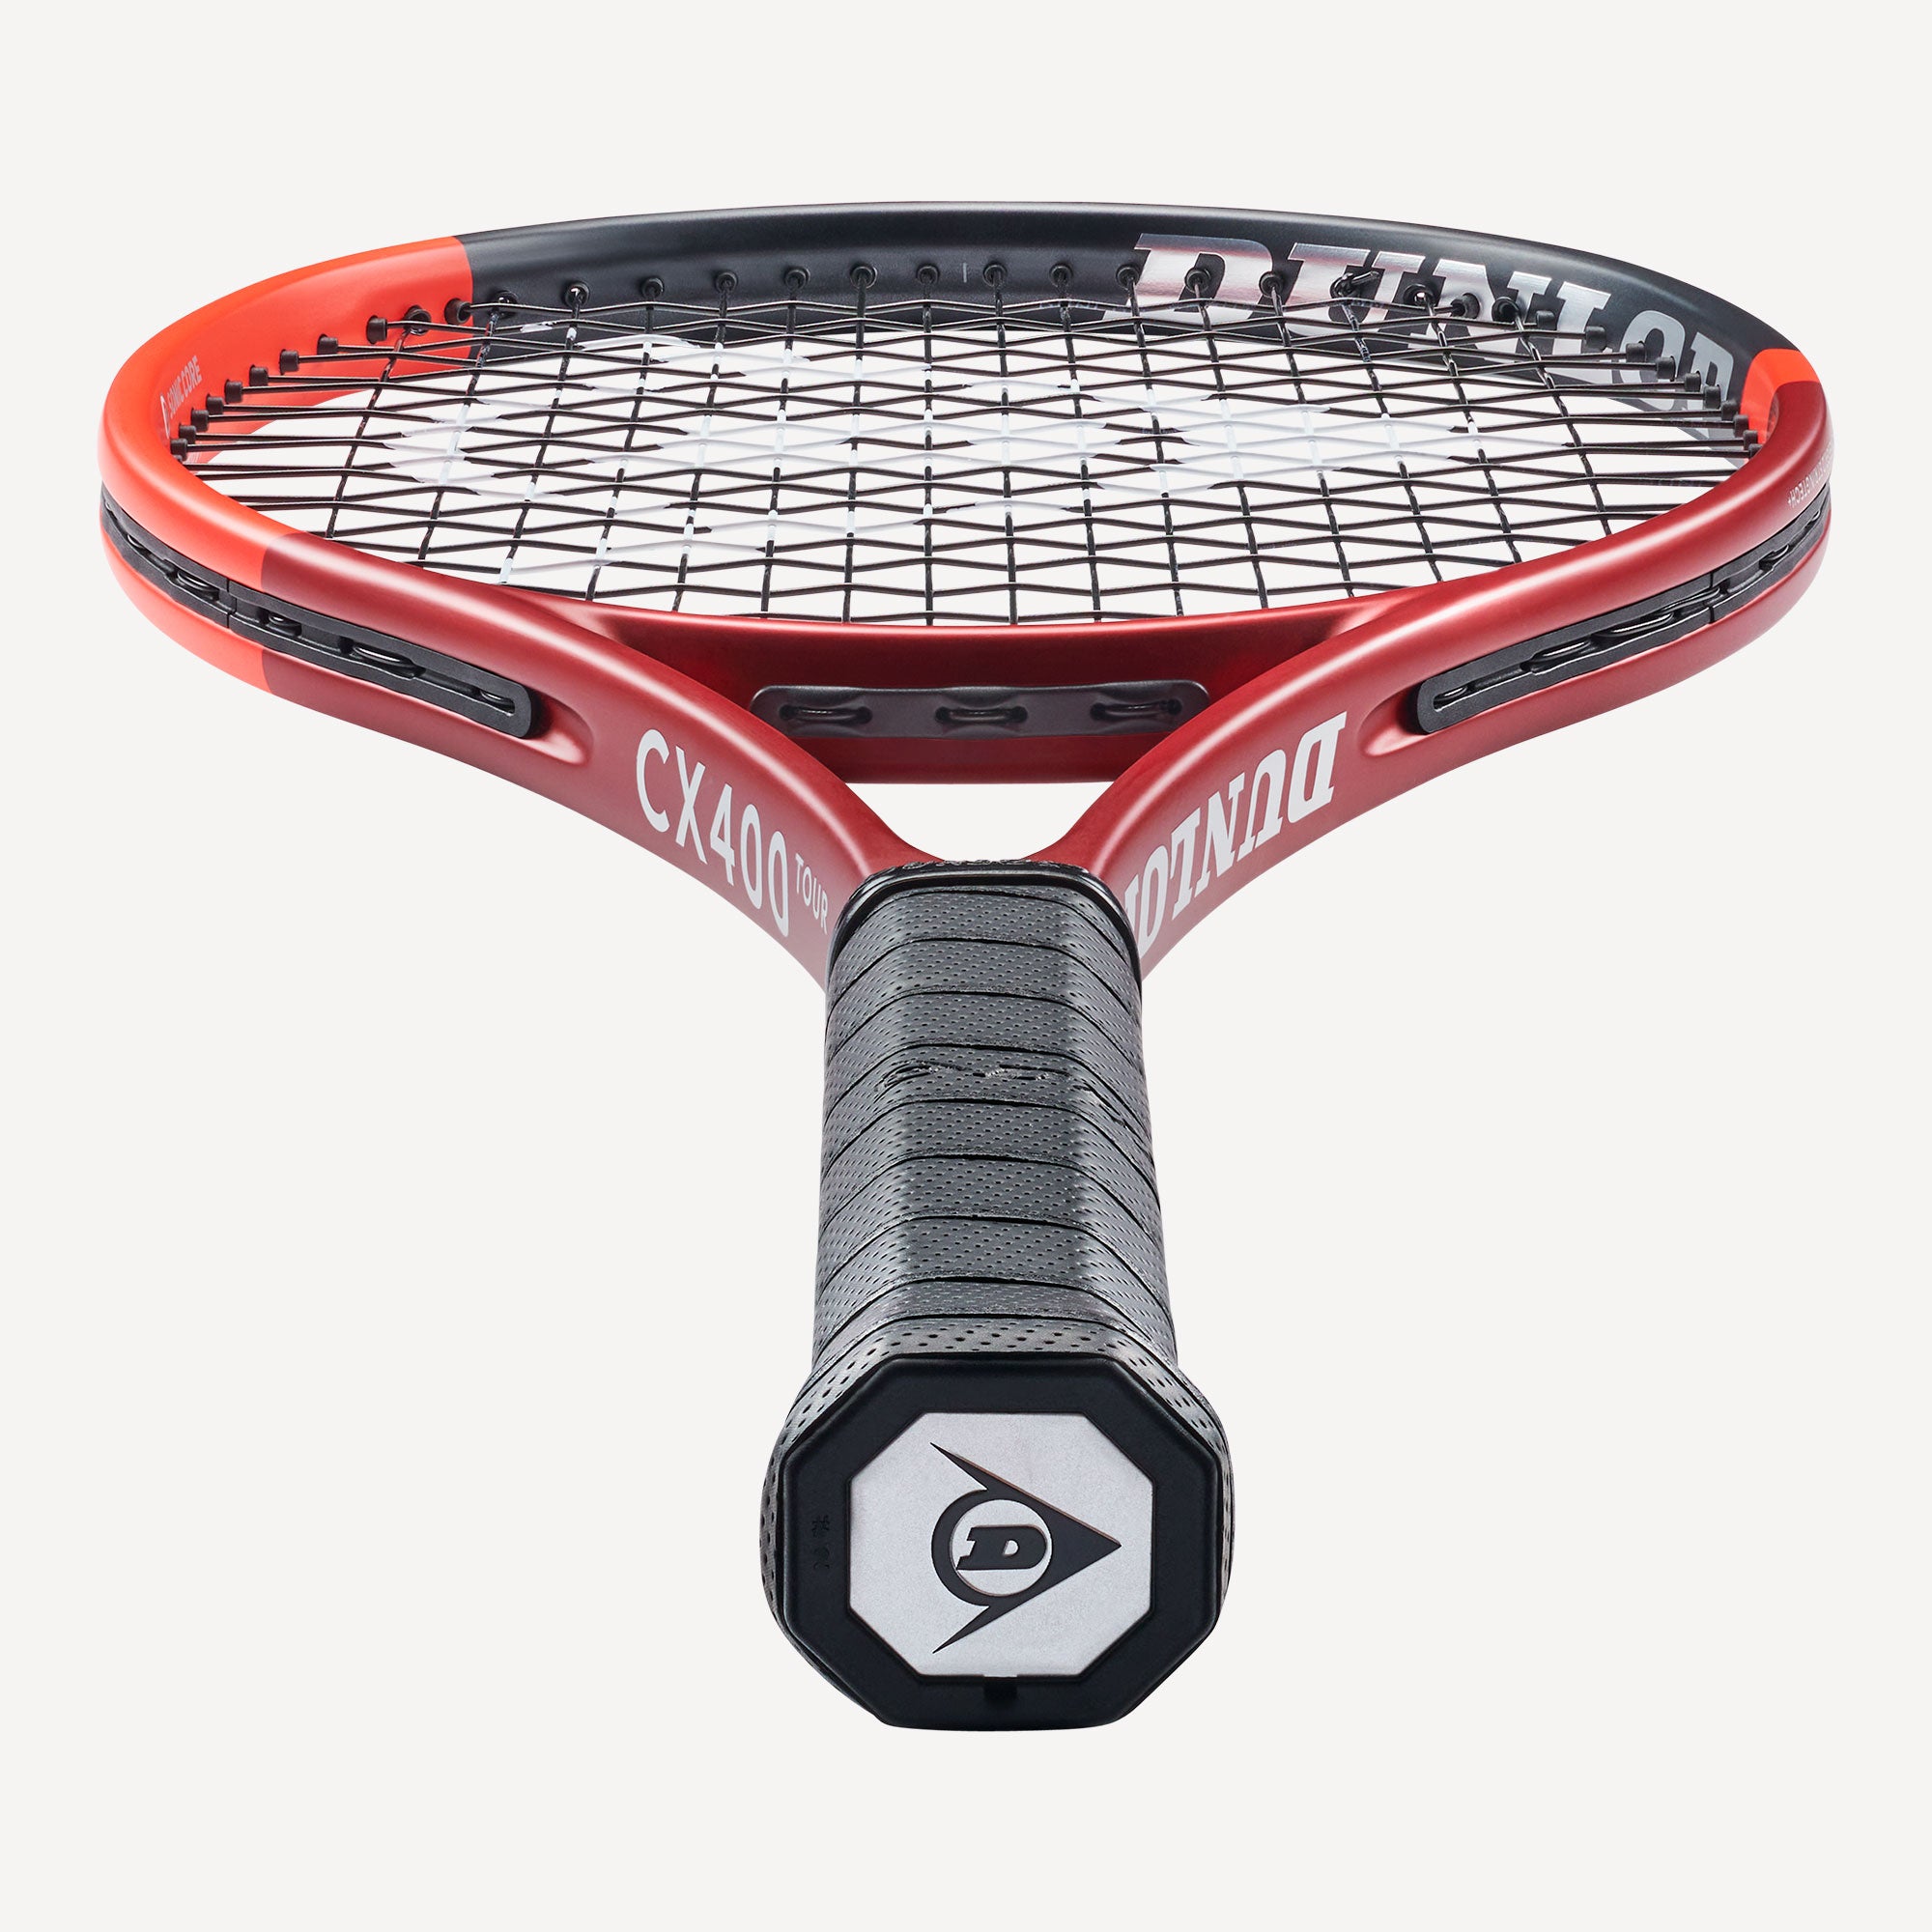 Dunlop CX 400 Tour Tennis Racket (3)